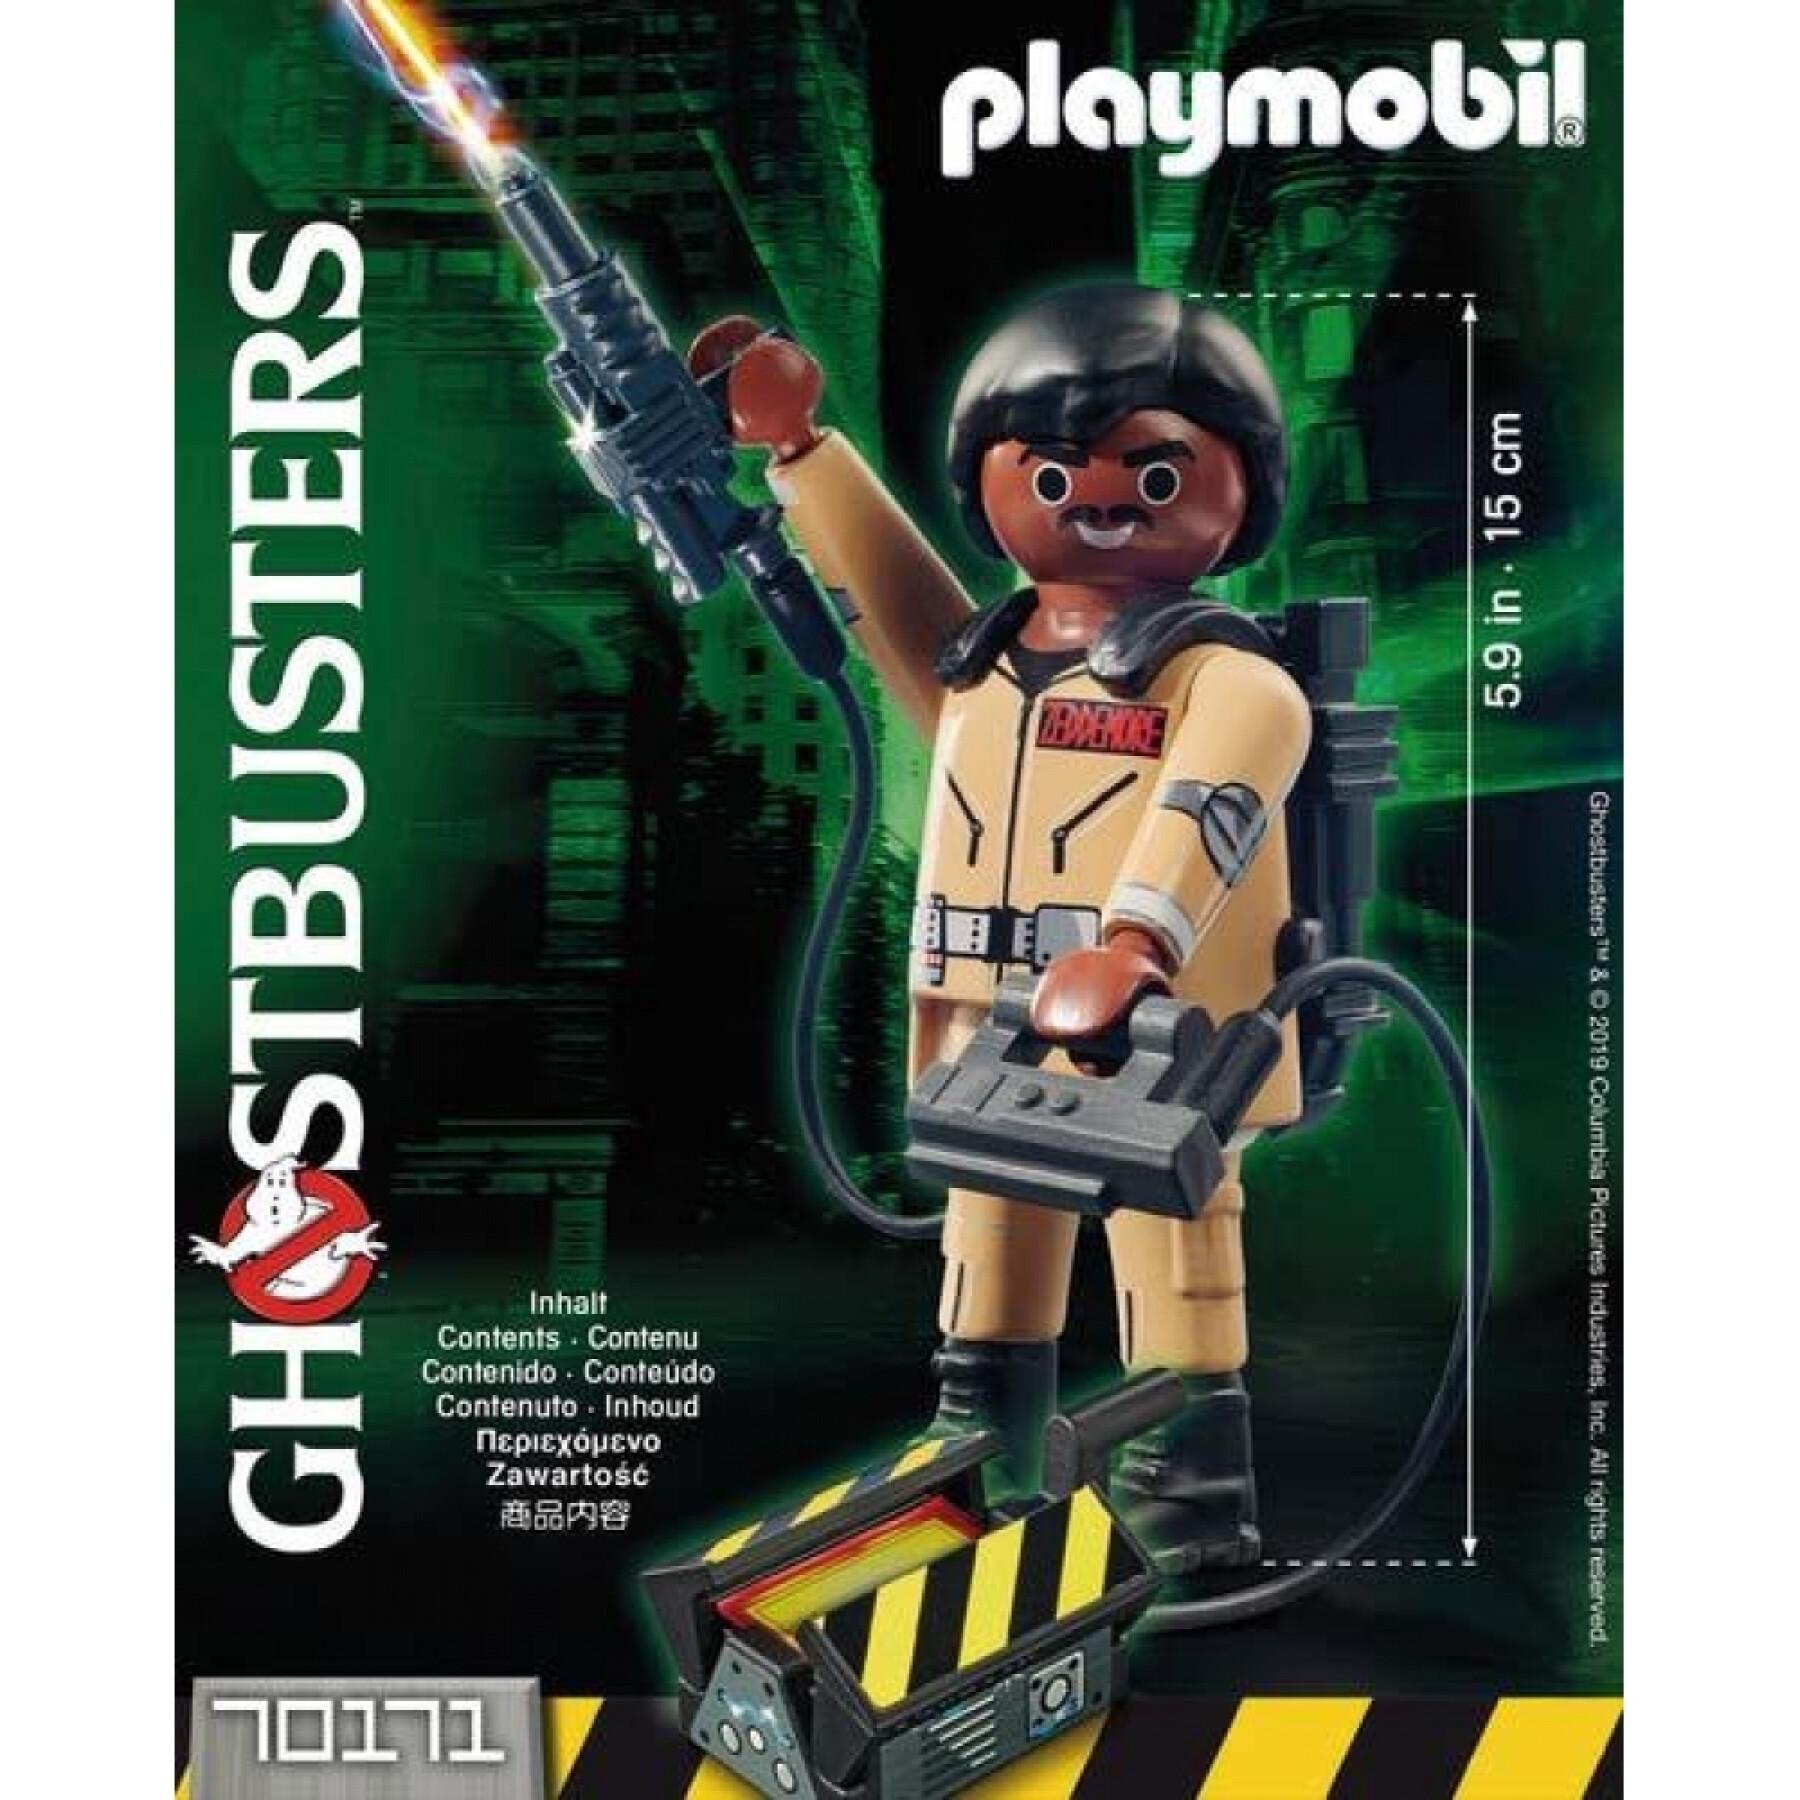 Figurita ghostbusters w.z Playmobil